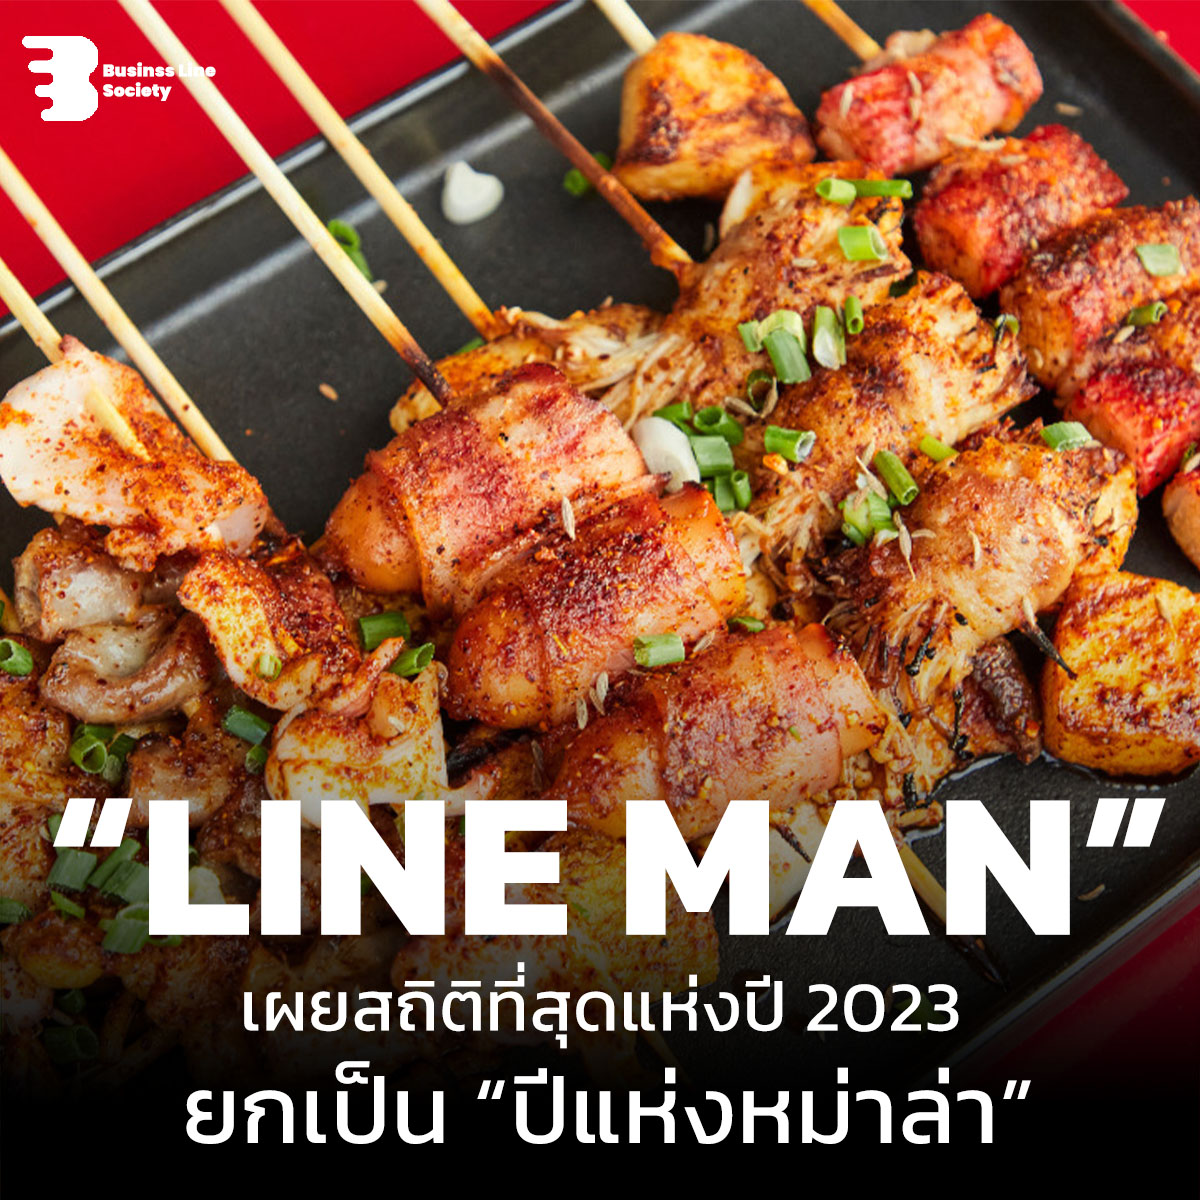 LINE MAN เผยสถิติที่สุดแห่งปี 2023 ยกเป็น “ปีแห่งหม่าล่า”